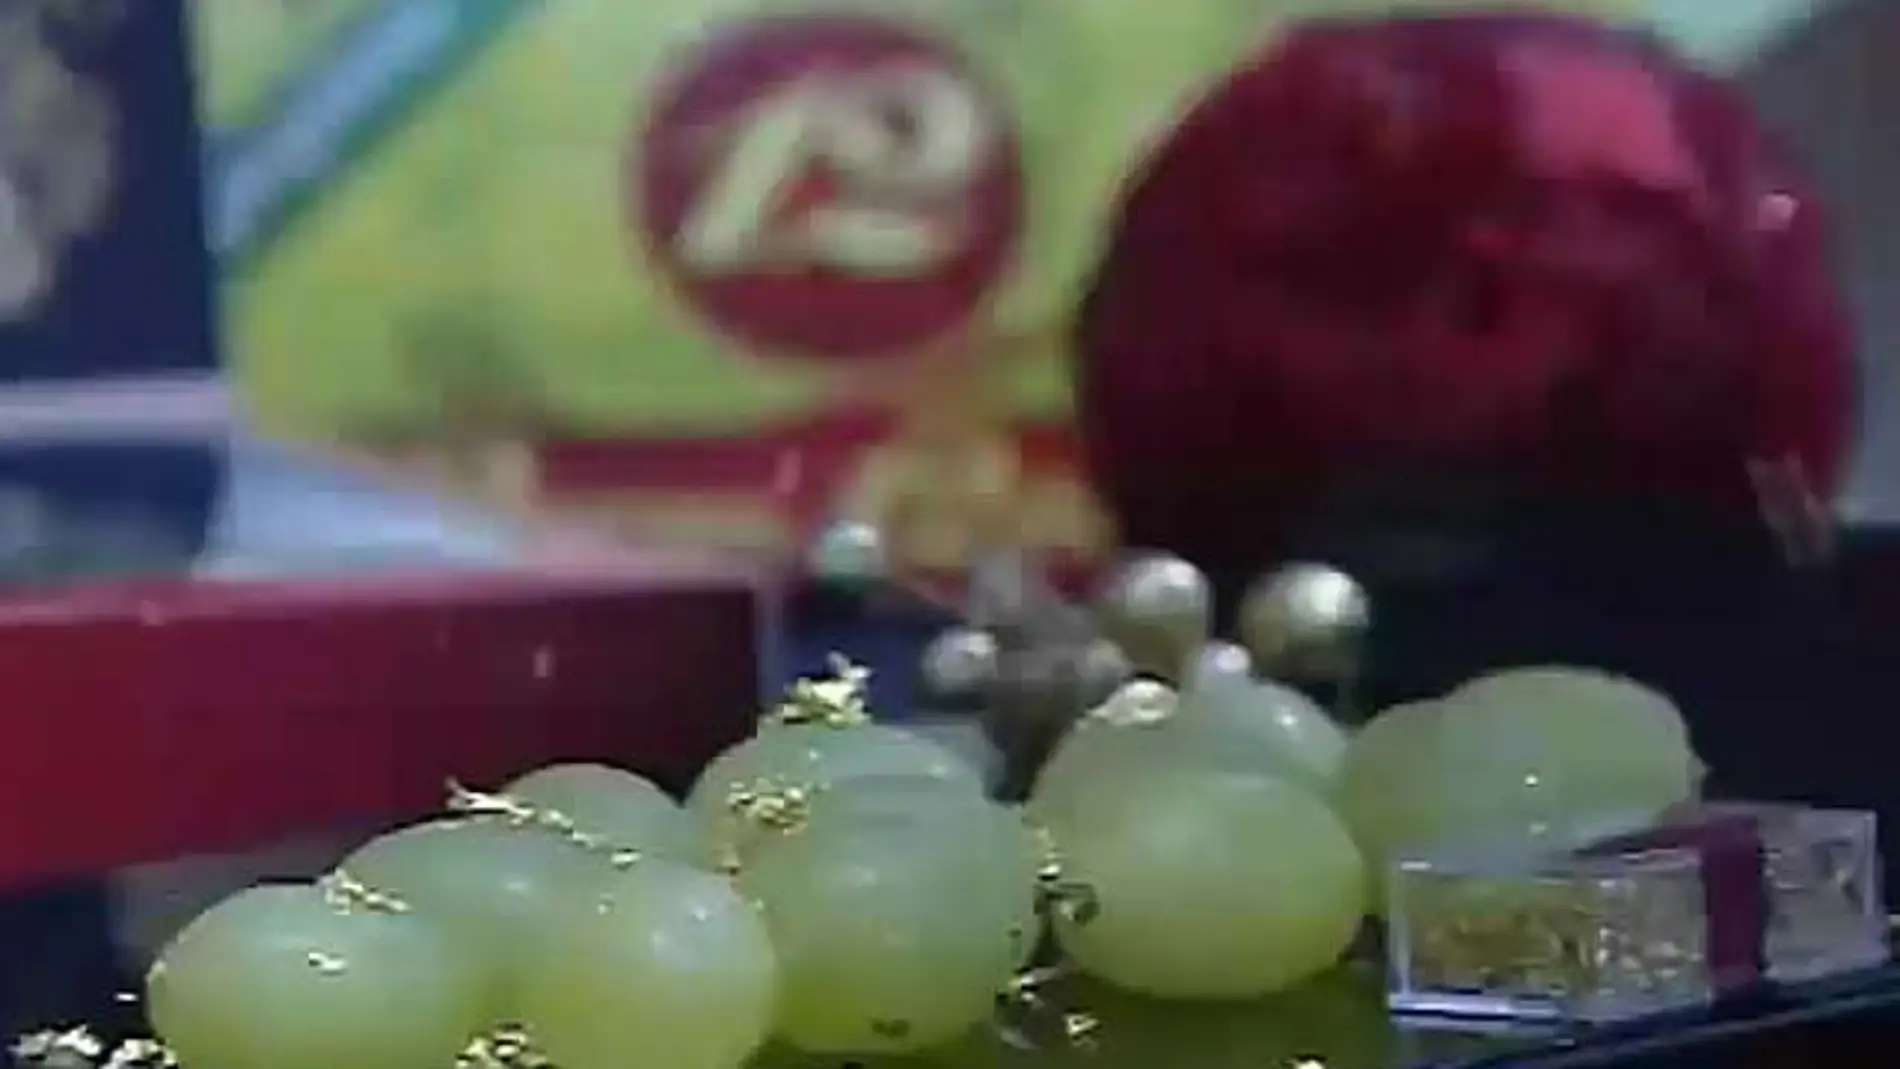 Llegan las tradicionales uvas